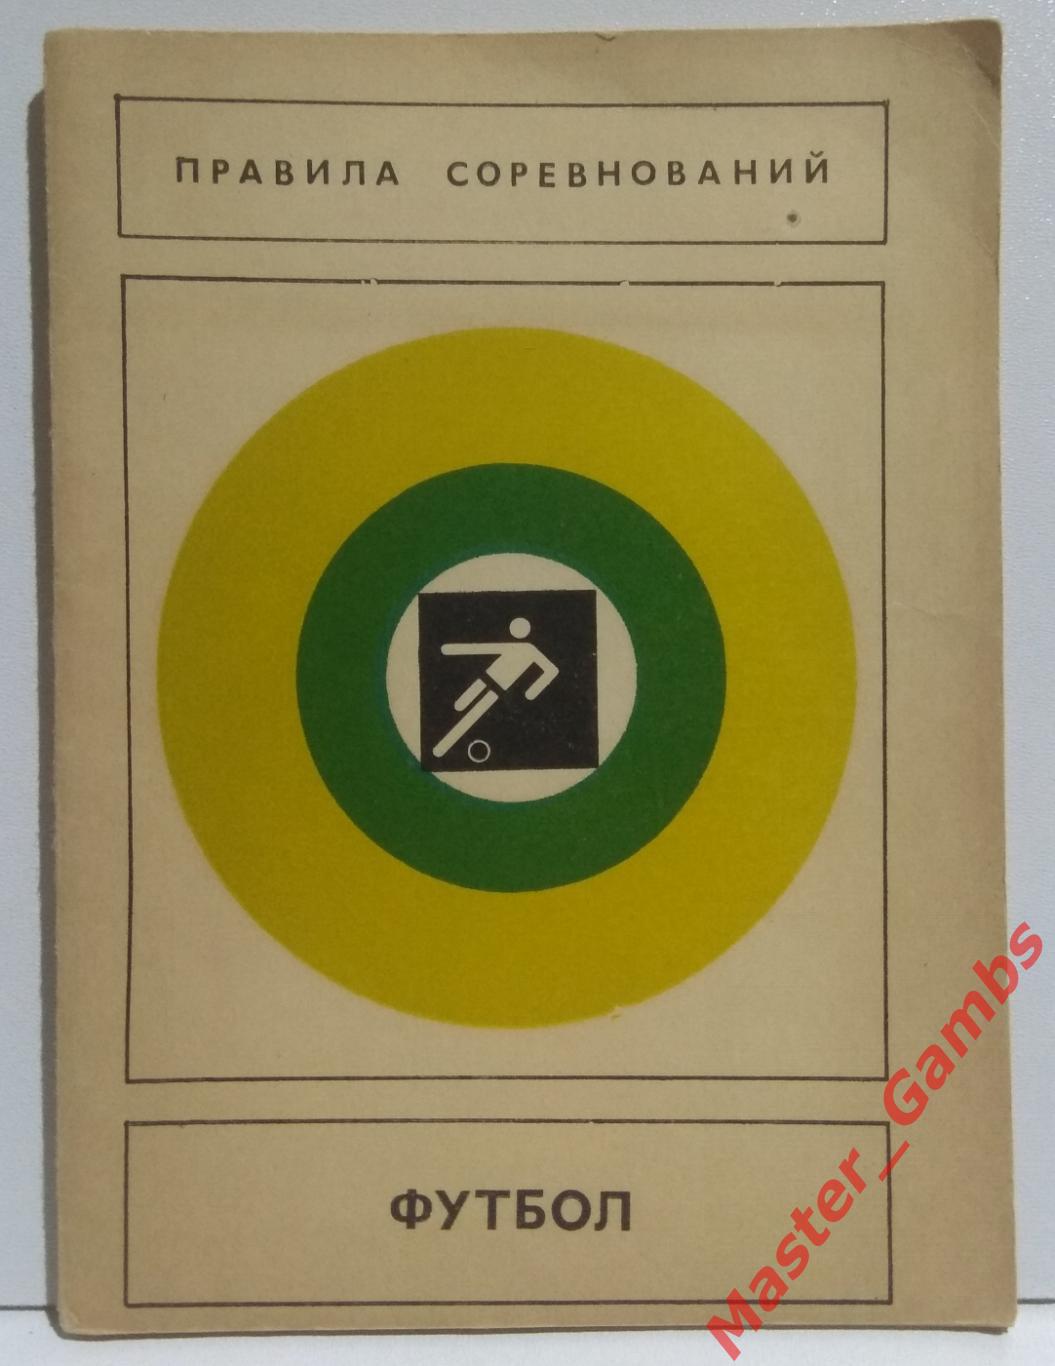 Футбол Правила соревнований фис москва 1979*